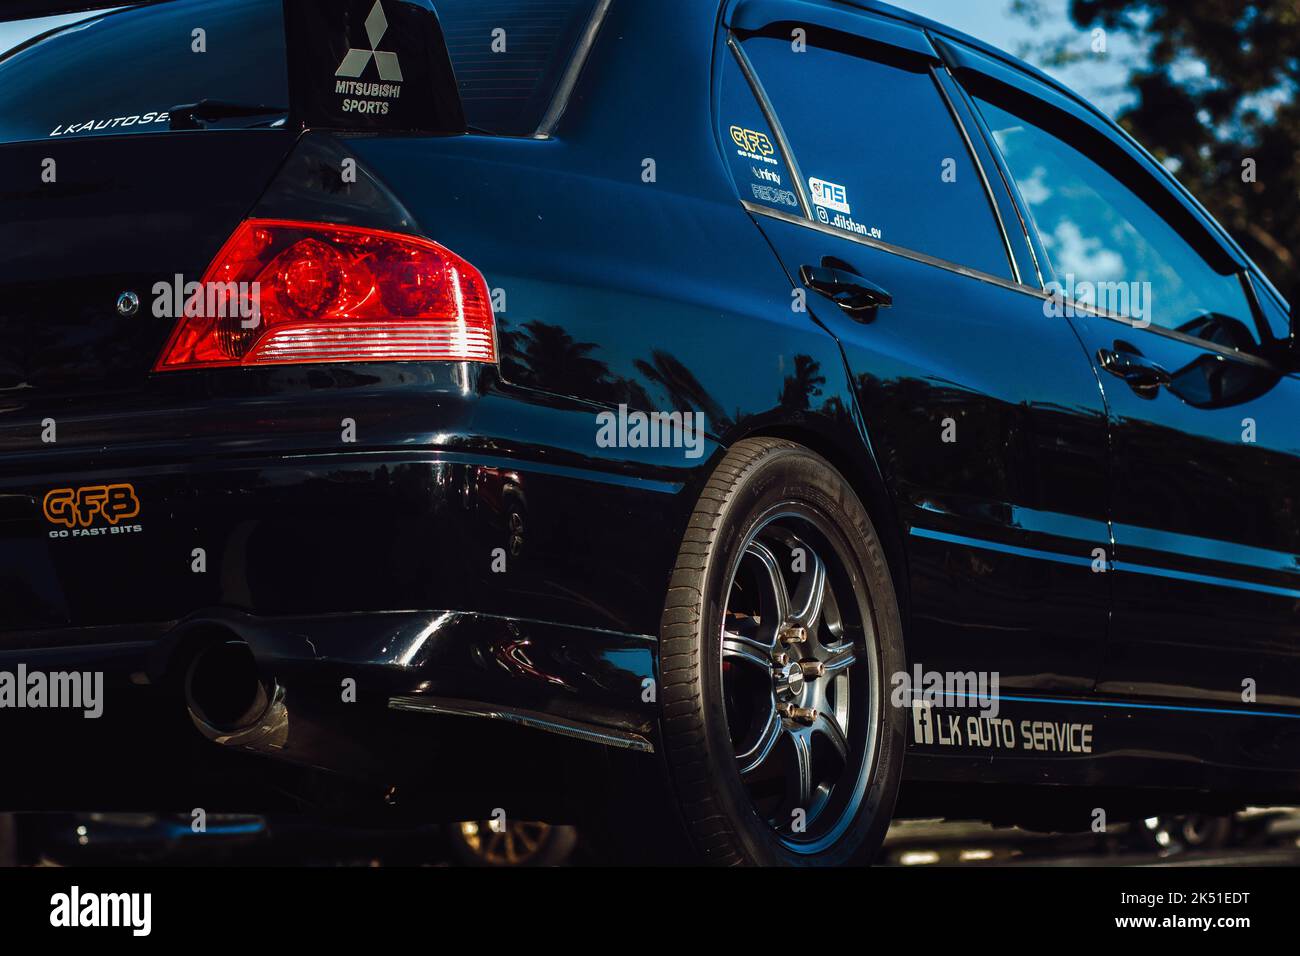 Vue en profil du bord arrière d'une voiture Mitsubishi Evo 7 bleu foncé Banque D'Images